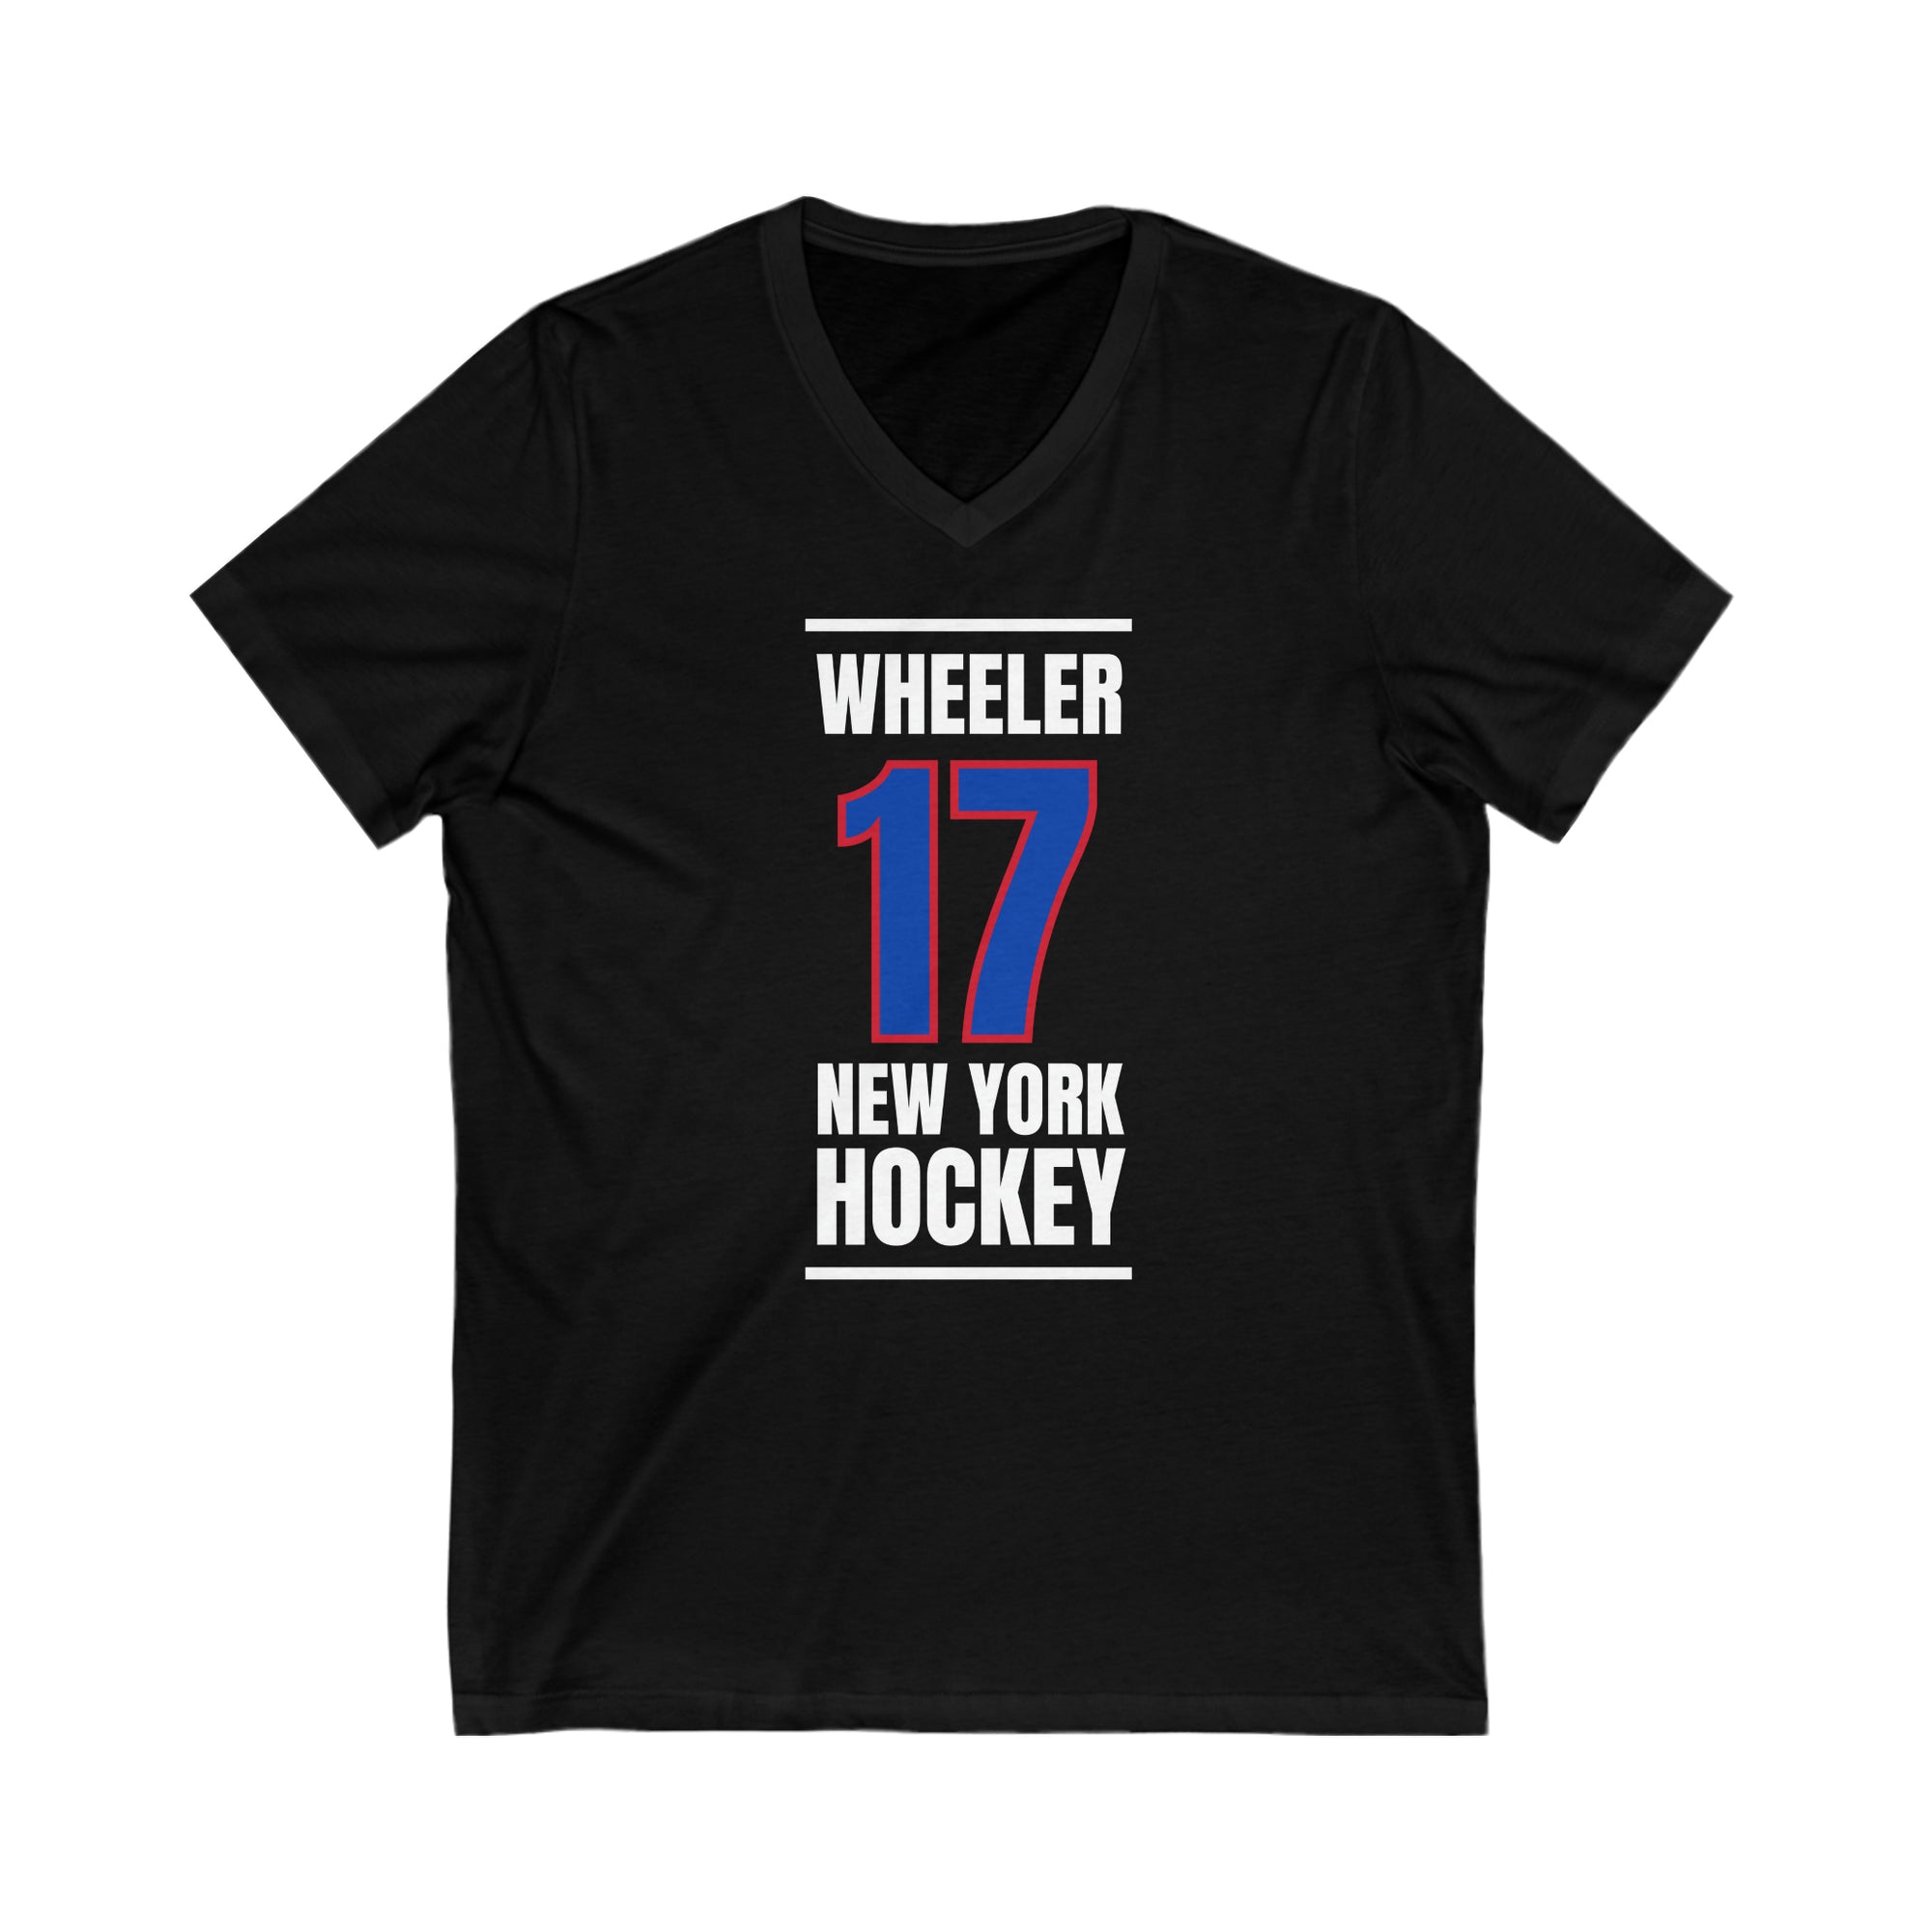 Wheeler 17 New York Hockey Royal Blue Vertical Design Unisex V-Neck Tee